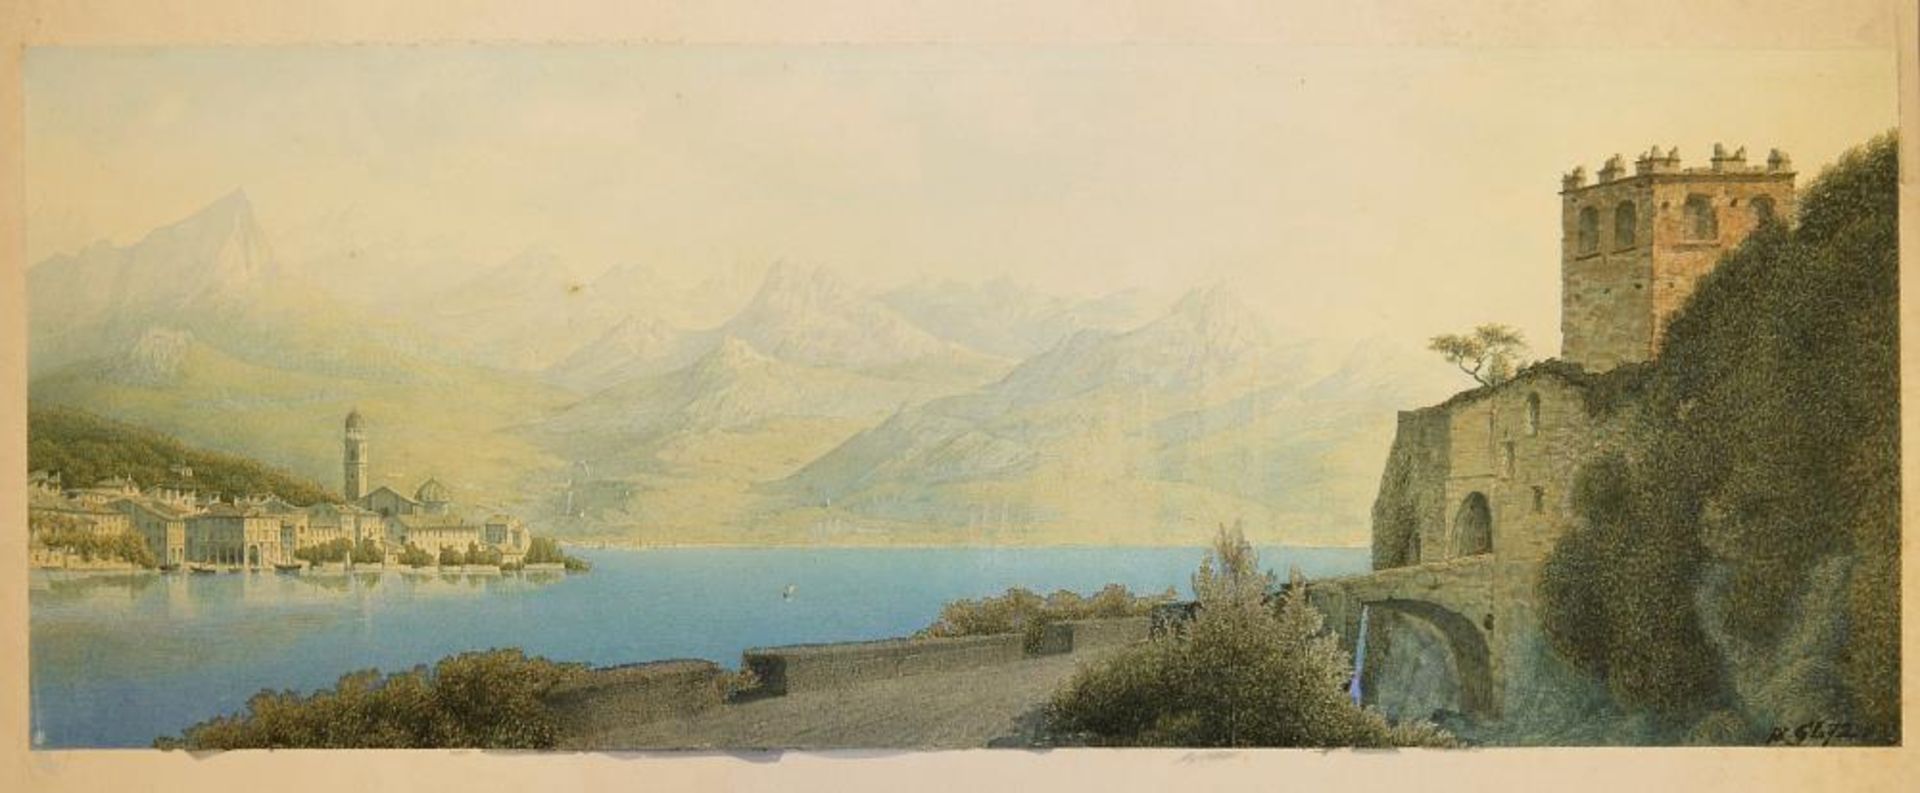 Meister-Aquarellist GL, Italienisches Dorf am Comer See, Aquarell von 1872, o. Rahmen Monogrammist